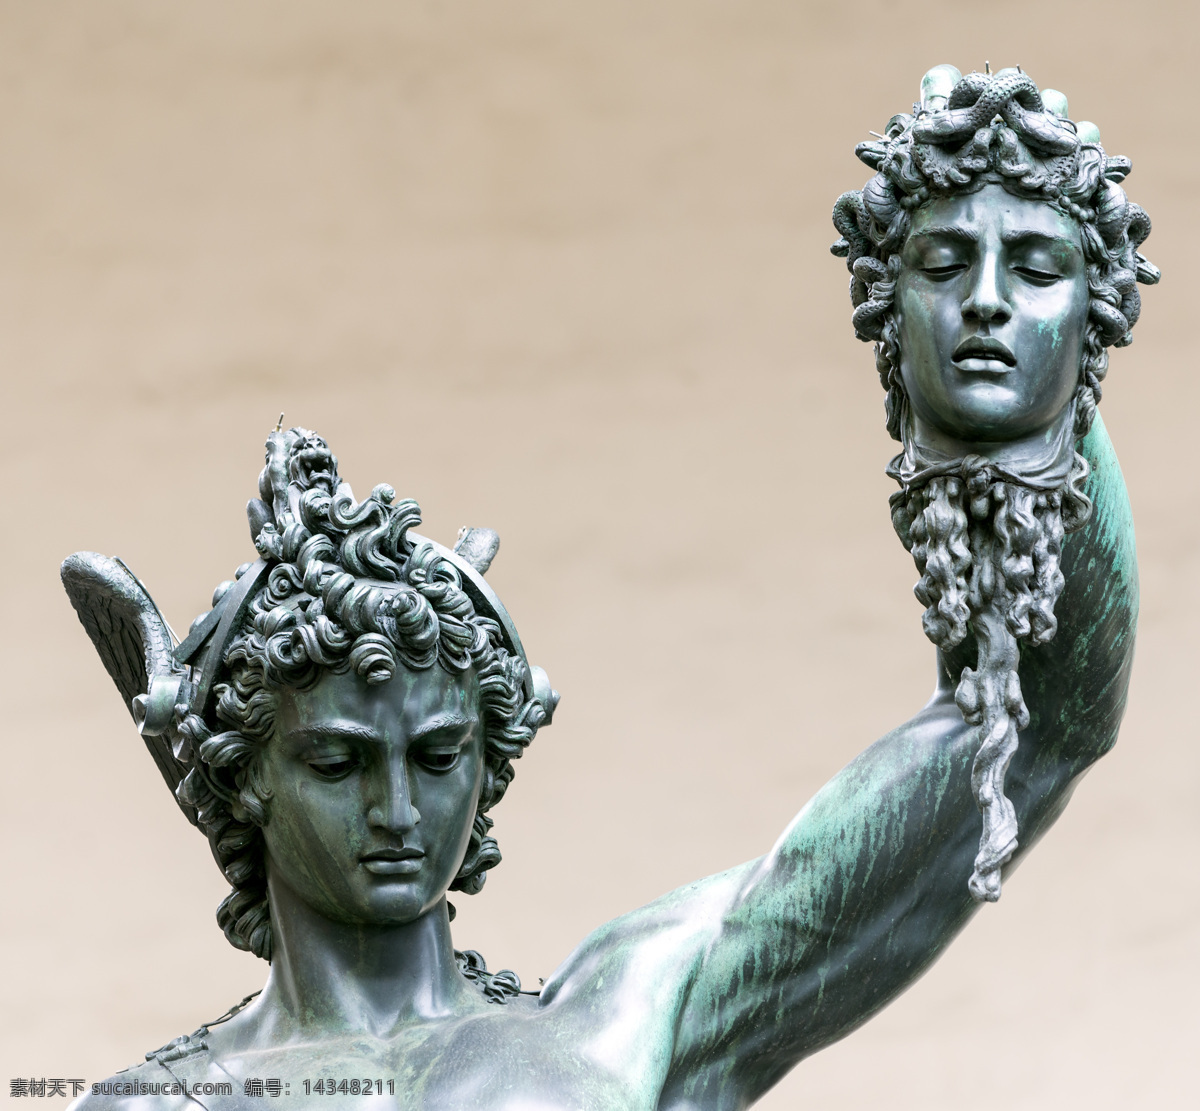 珀尔修雕塑 珀尔 修 雕塑 美杜莎的头颅 佛罗伦萨 意大利 城市 风景 城市雕塑 塑像 石像 石雕 建筑设计 环境家居 黑色